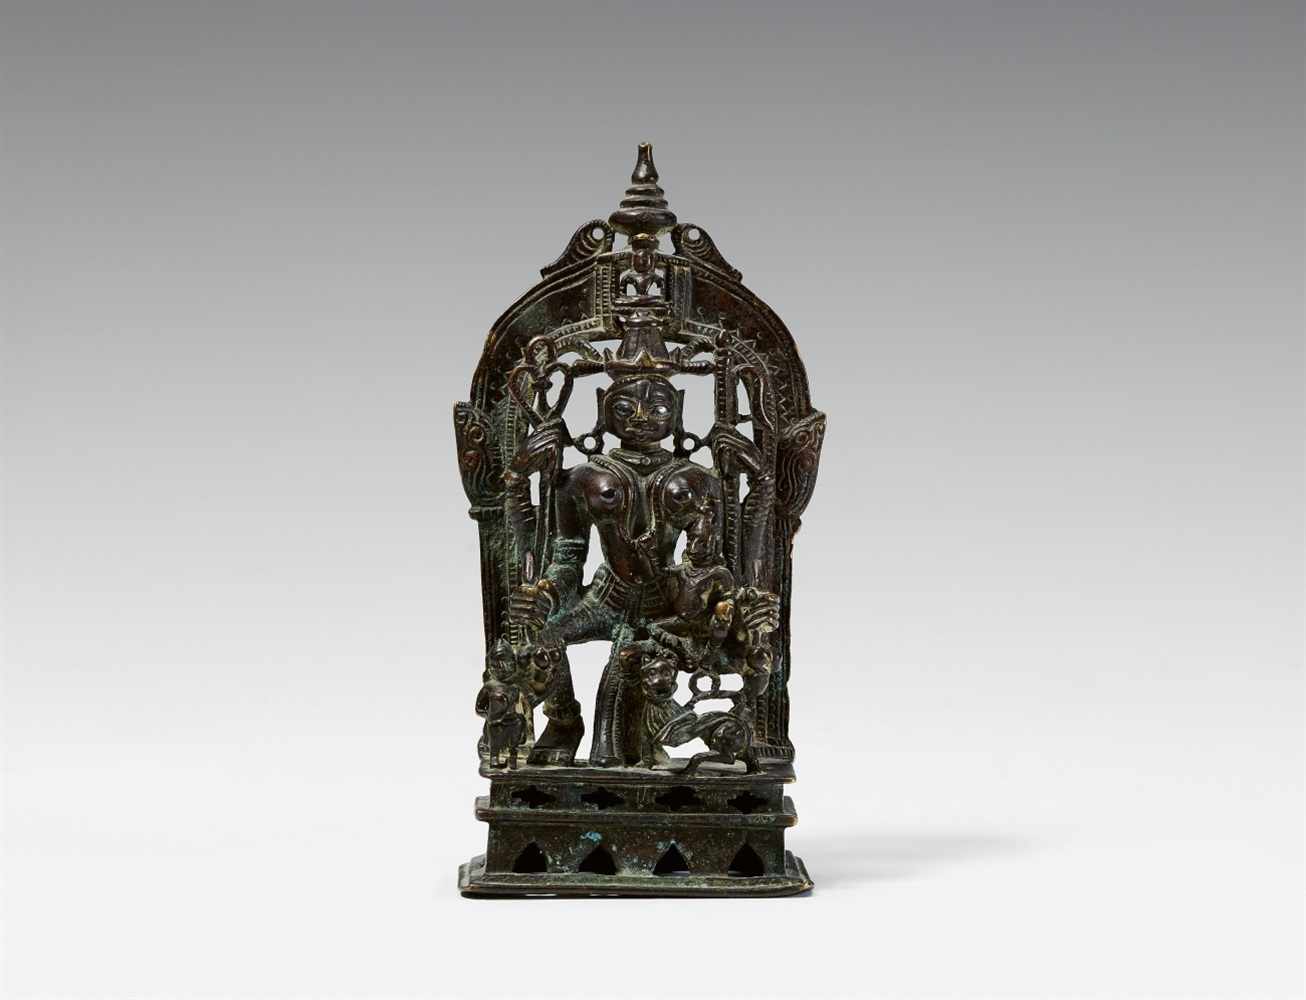 Jain-Altar der Ambika. Bronze mit Einlagen aus Silber. Gujarat/Rajasthan. Datiert 1501 Ambika